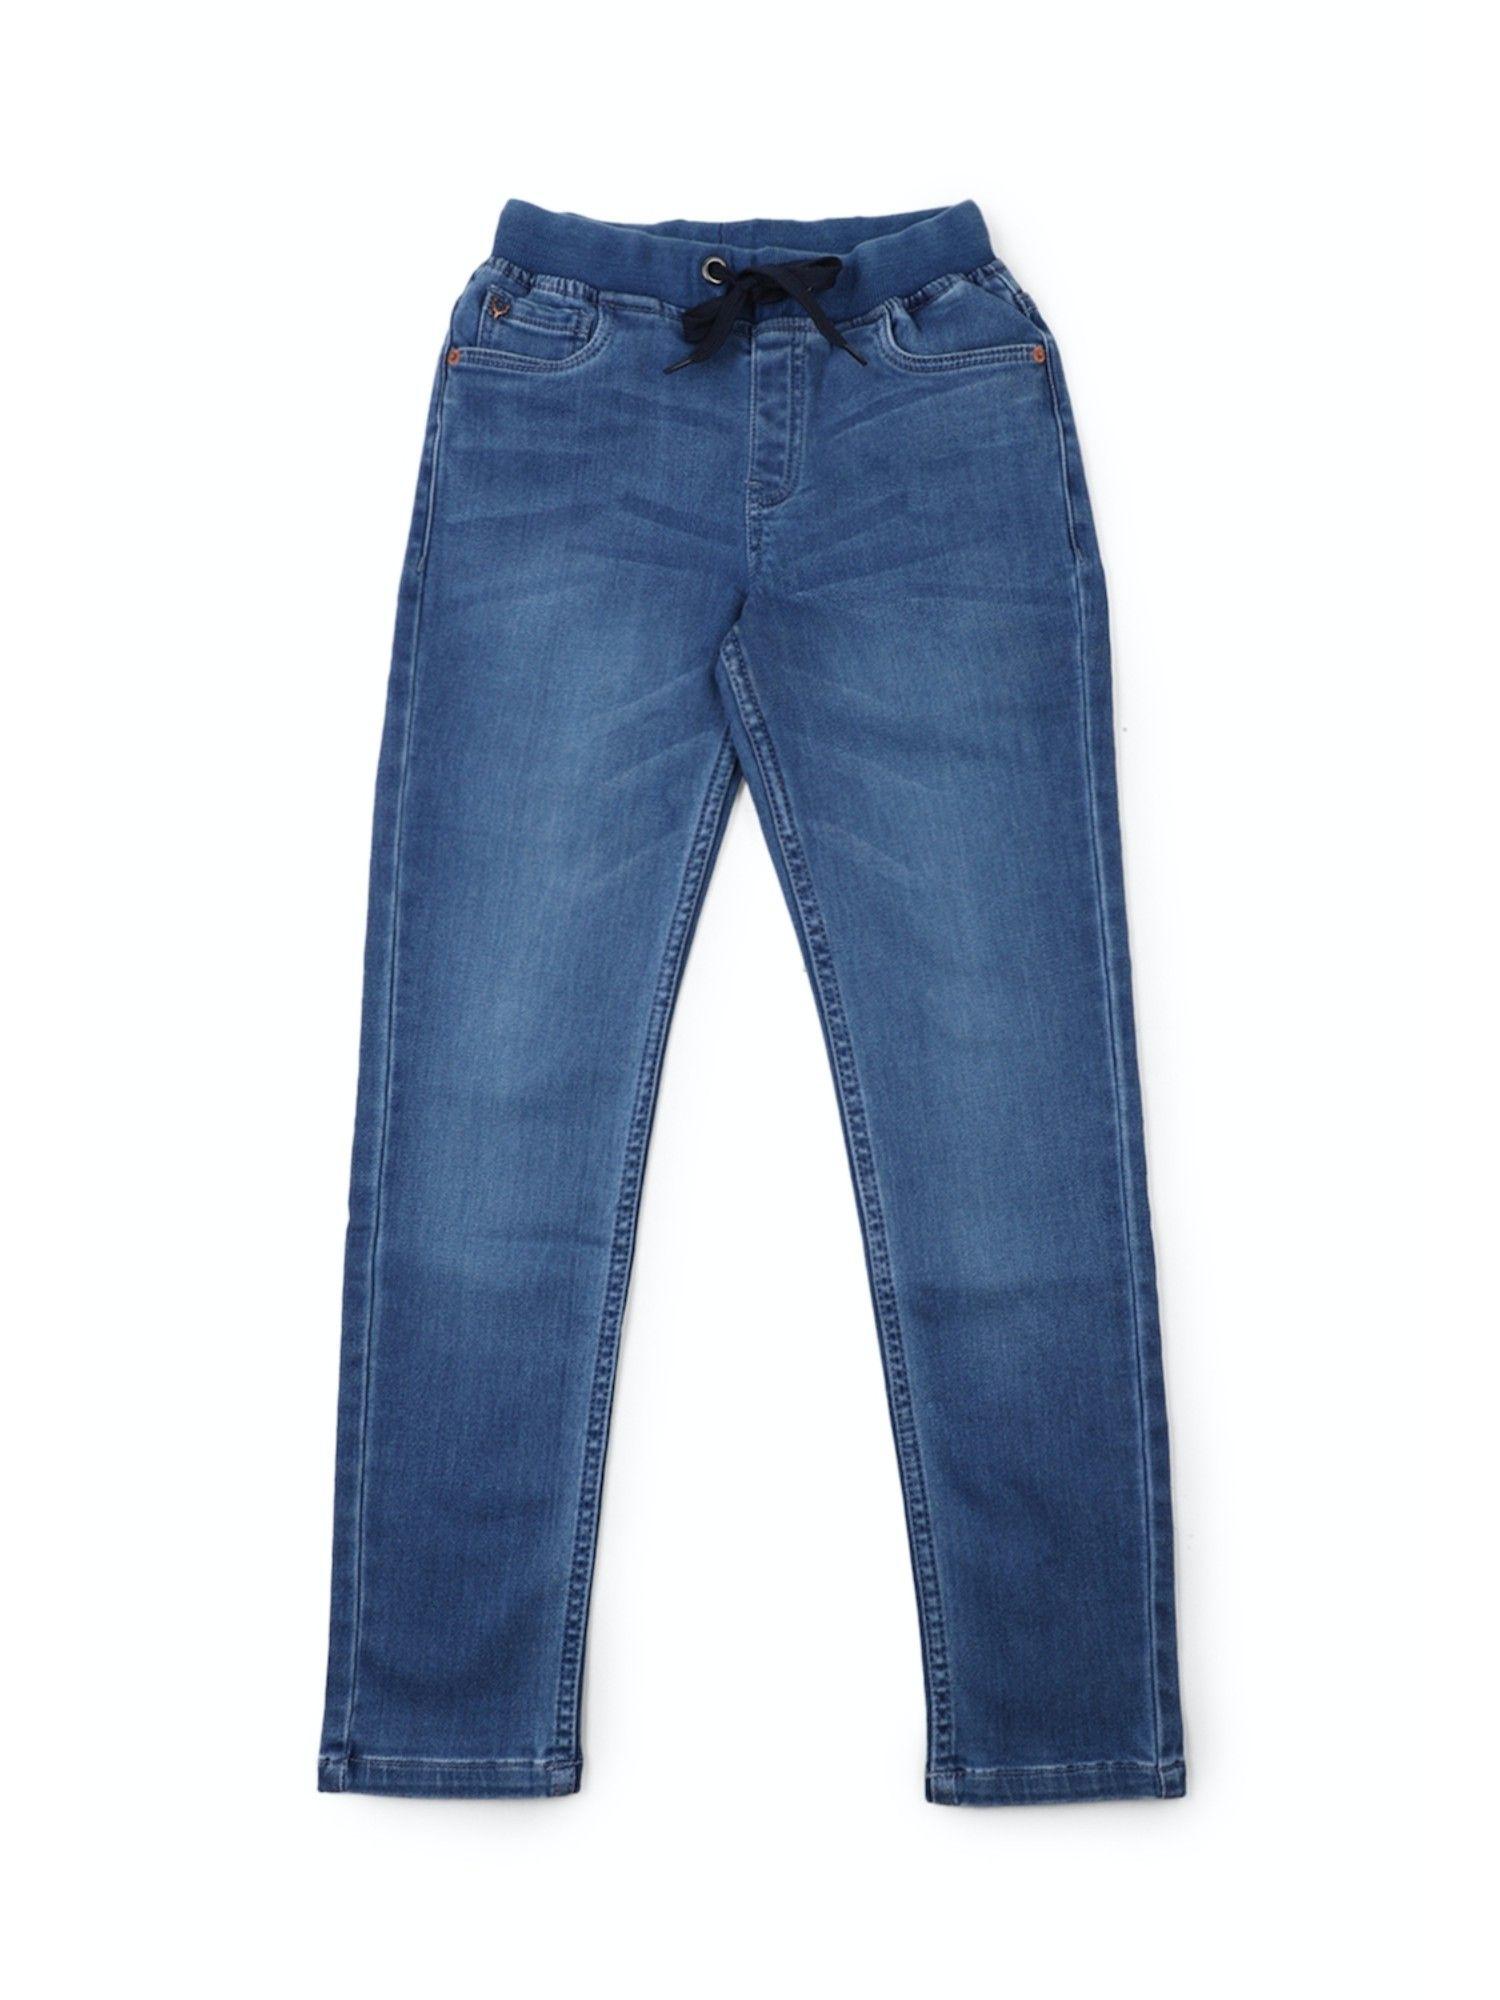 boys-blue-plain-jeans